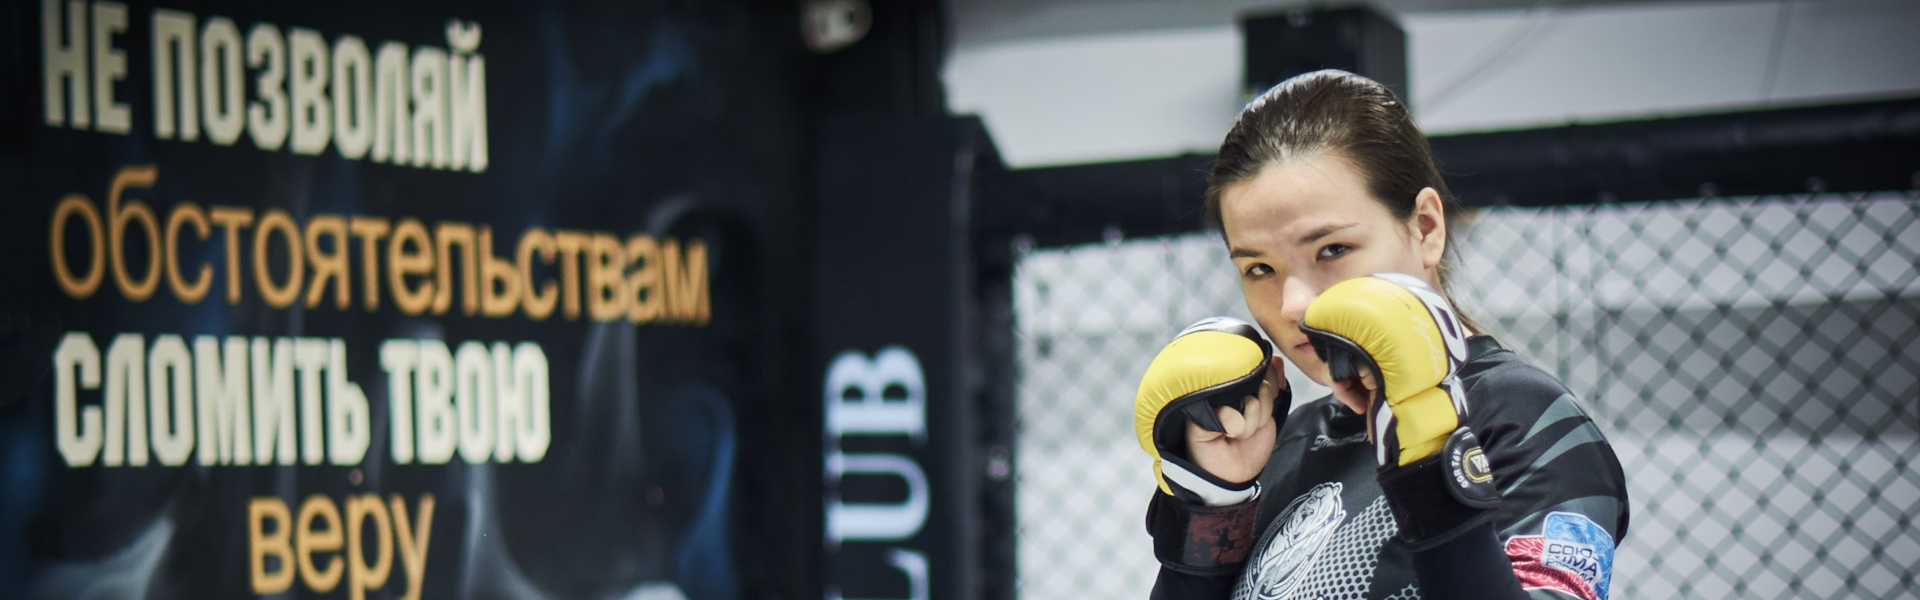 Истории девушек-бойцов: как пришли в спорт и что нужно для победы